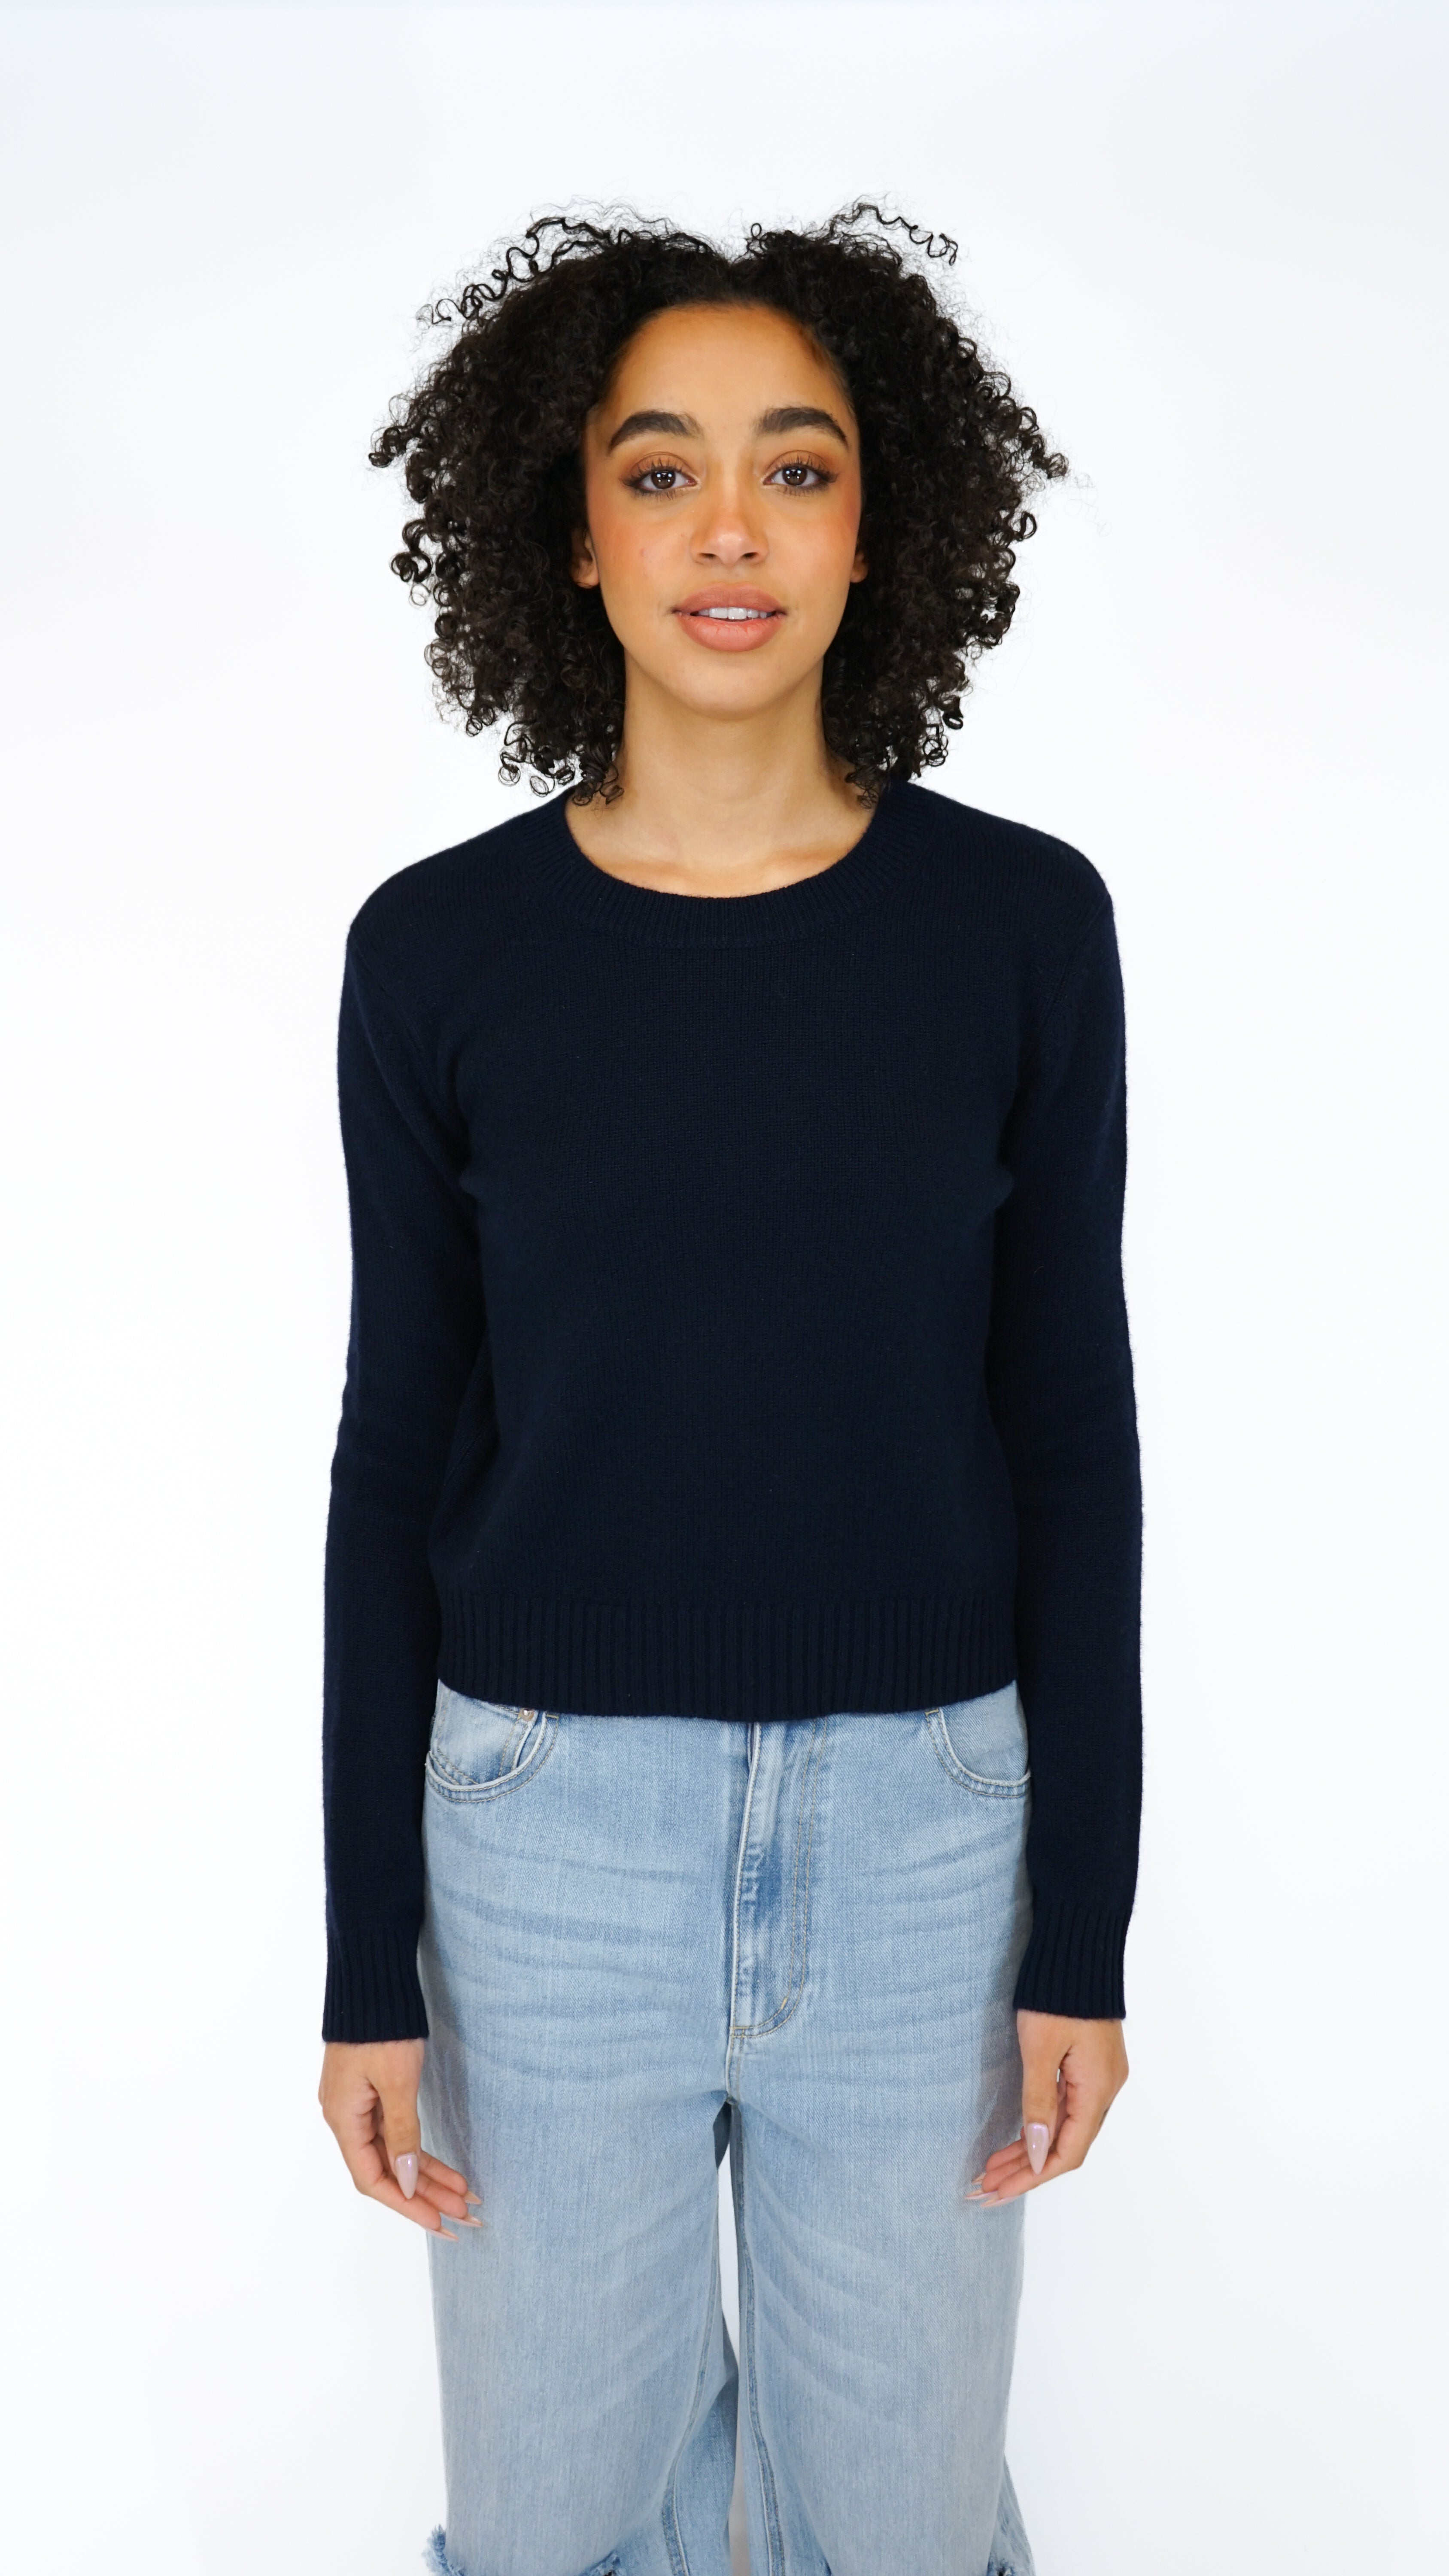 The Lisa Yang Mable Crewneck Sweater